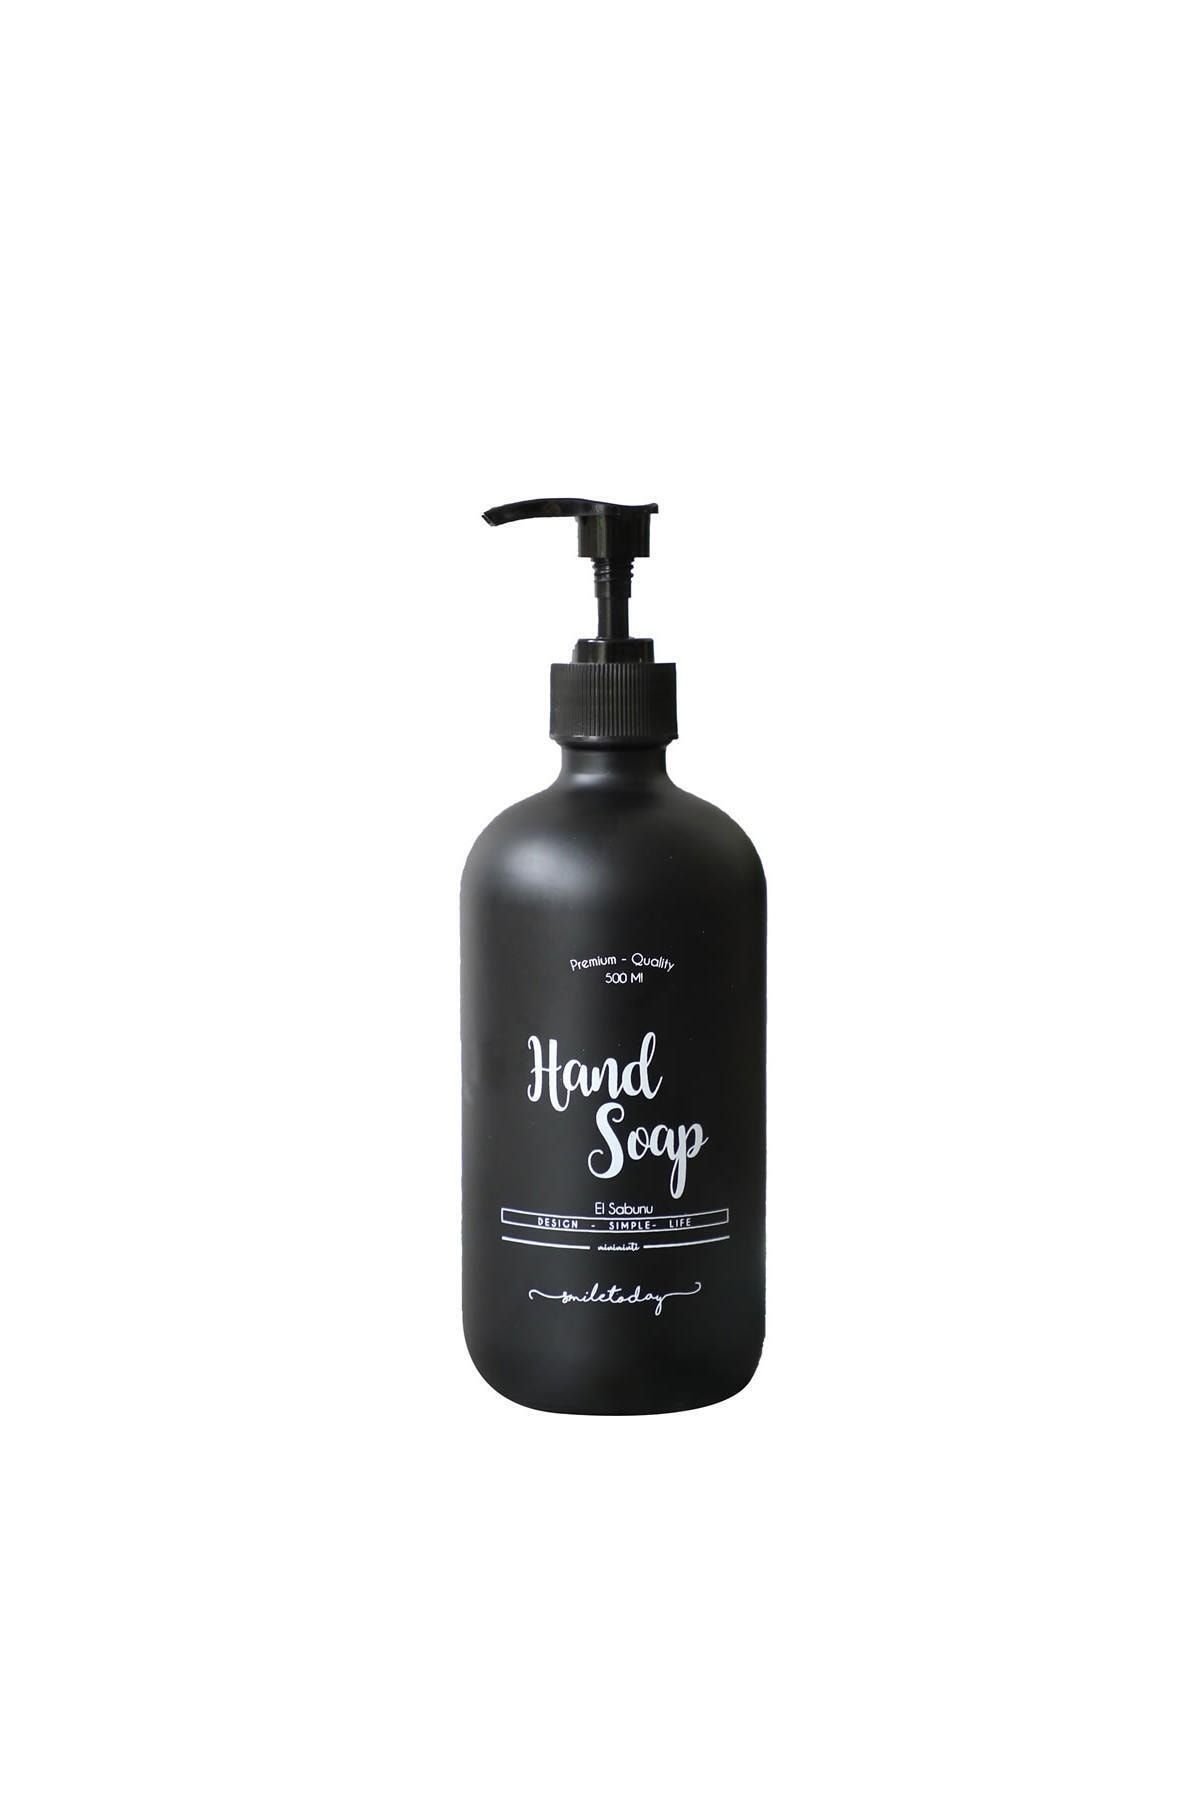 Miniminti Siyah Cam Sıvı Sabunluk Şişesi - 500 ml (HAND WASH)